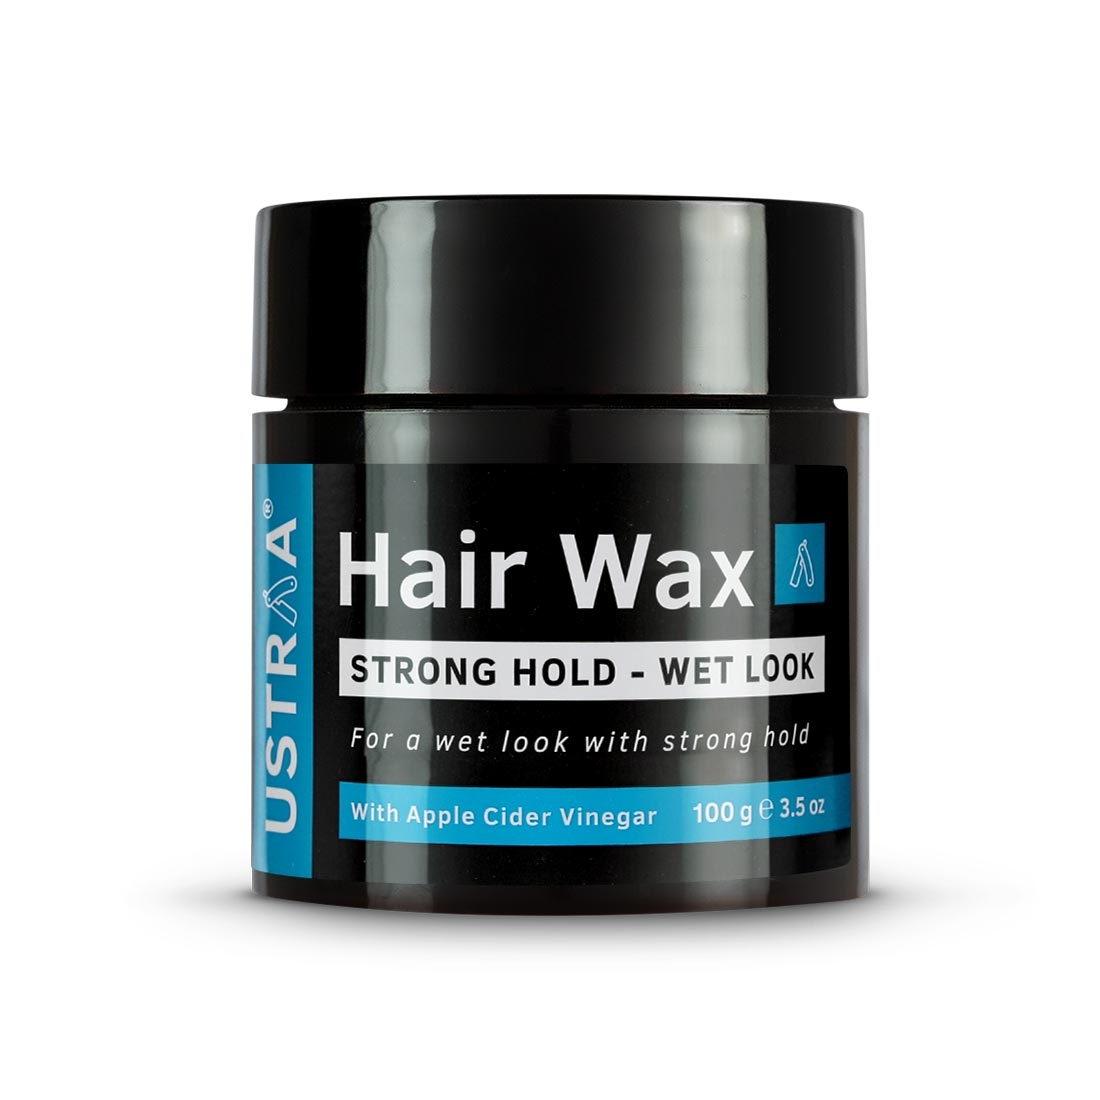 Ustraa | Ustraa Ayurvedic Beard Growth Oil -100ml & Hair Wax Wet - 100g 4